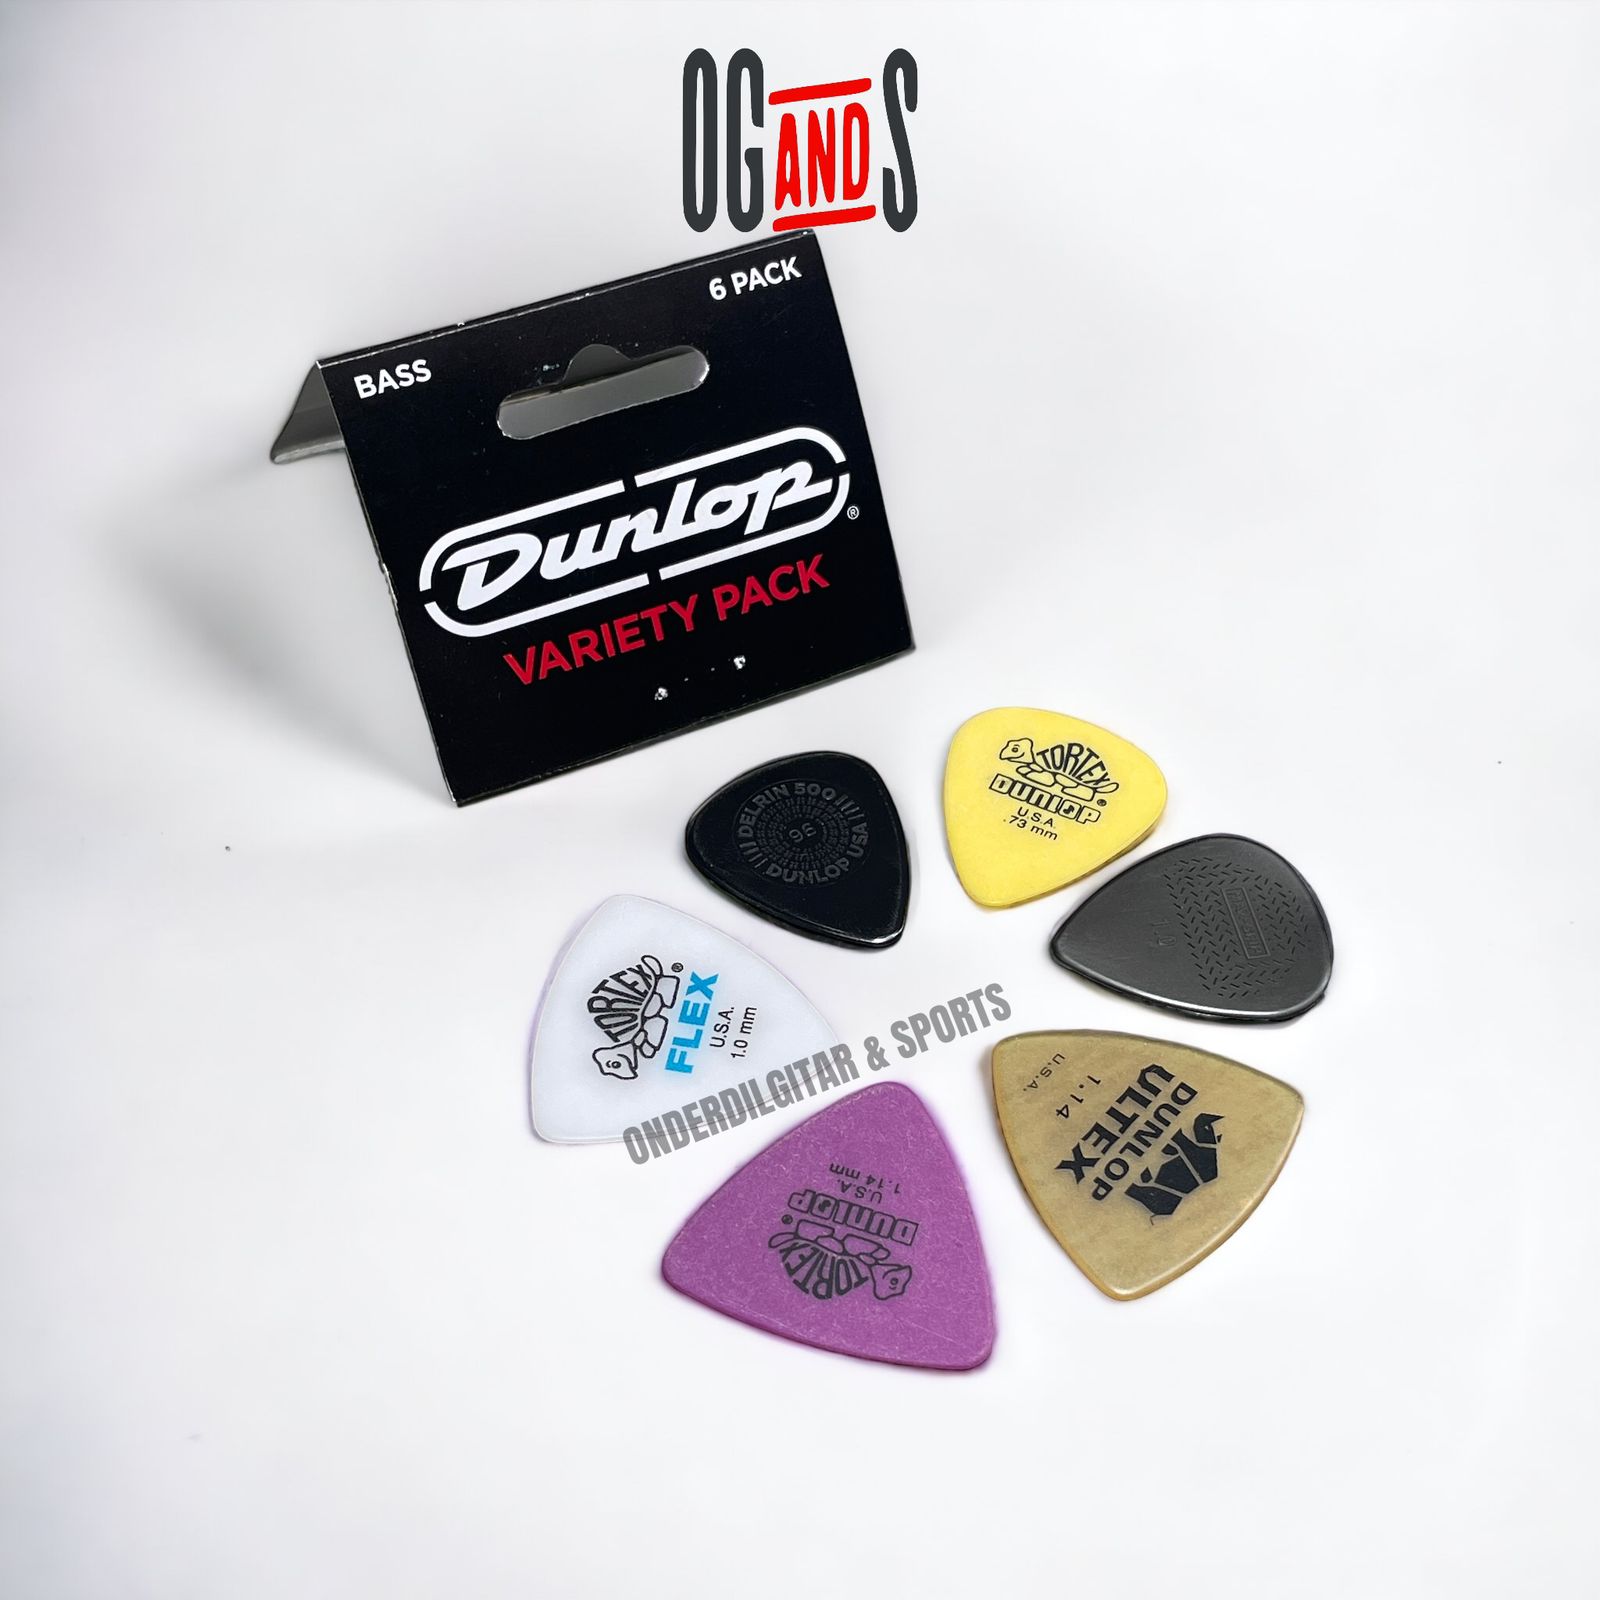 Dunlop Bass Pick Variety Pack